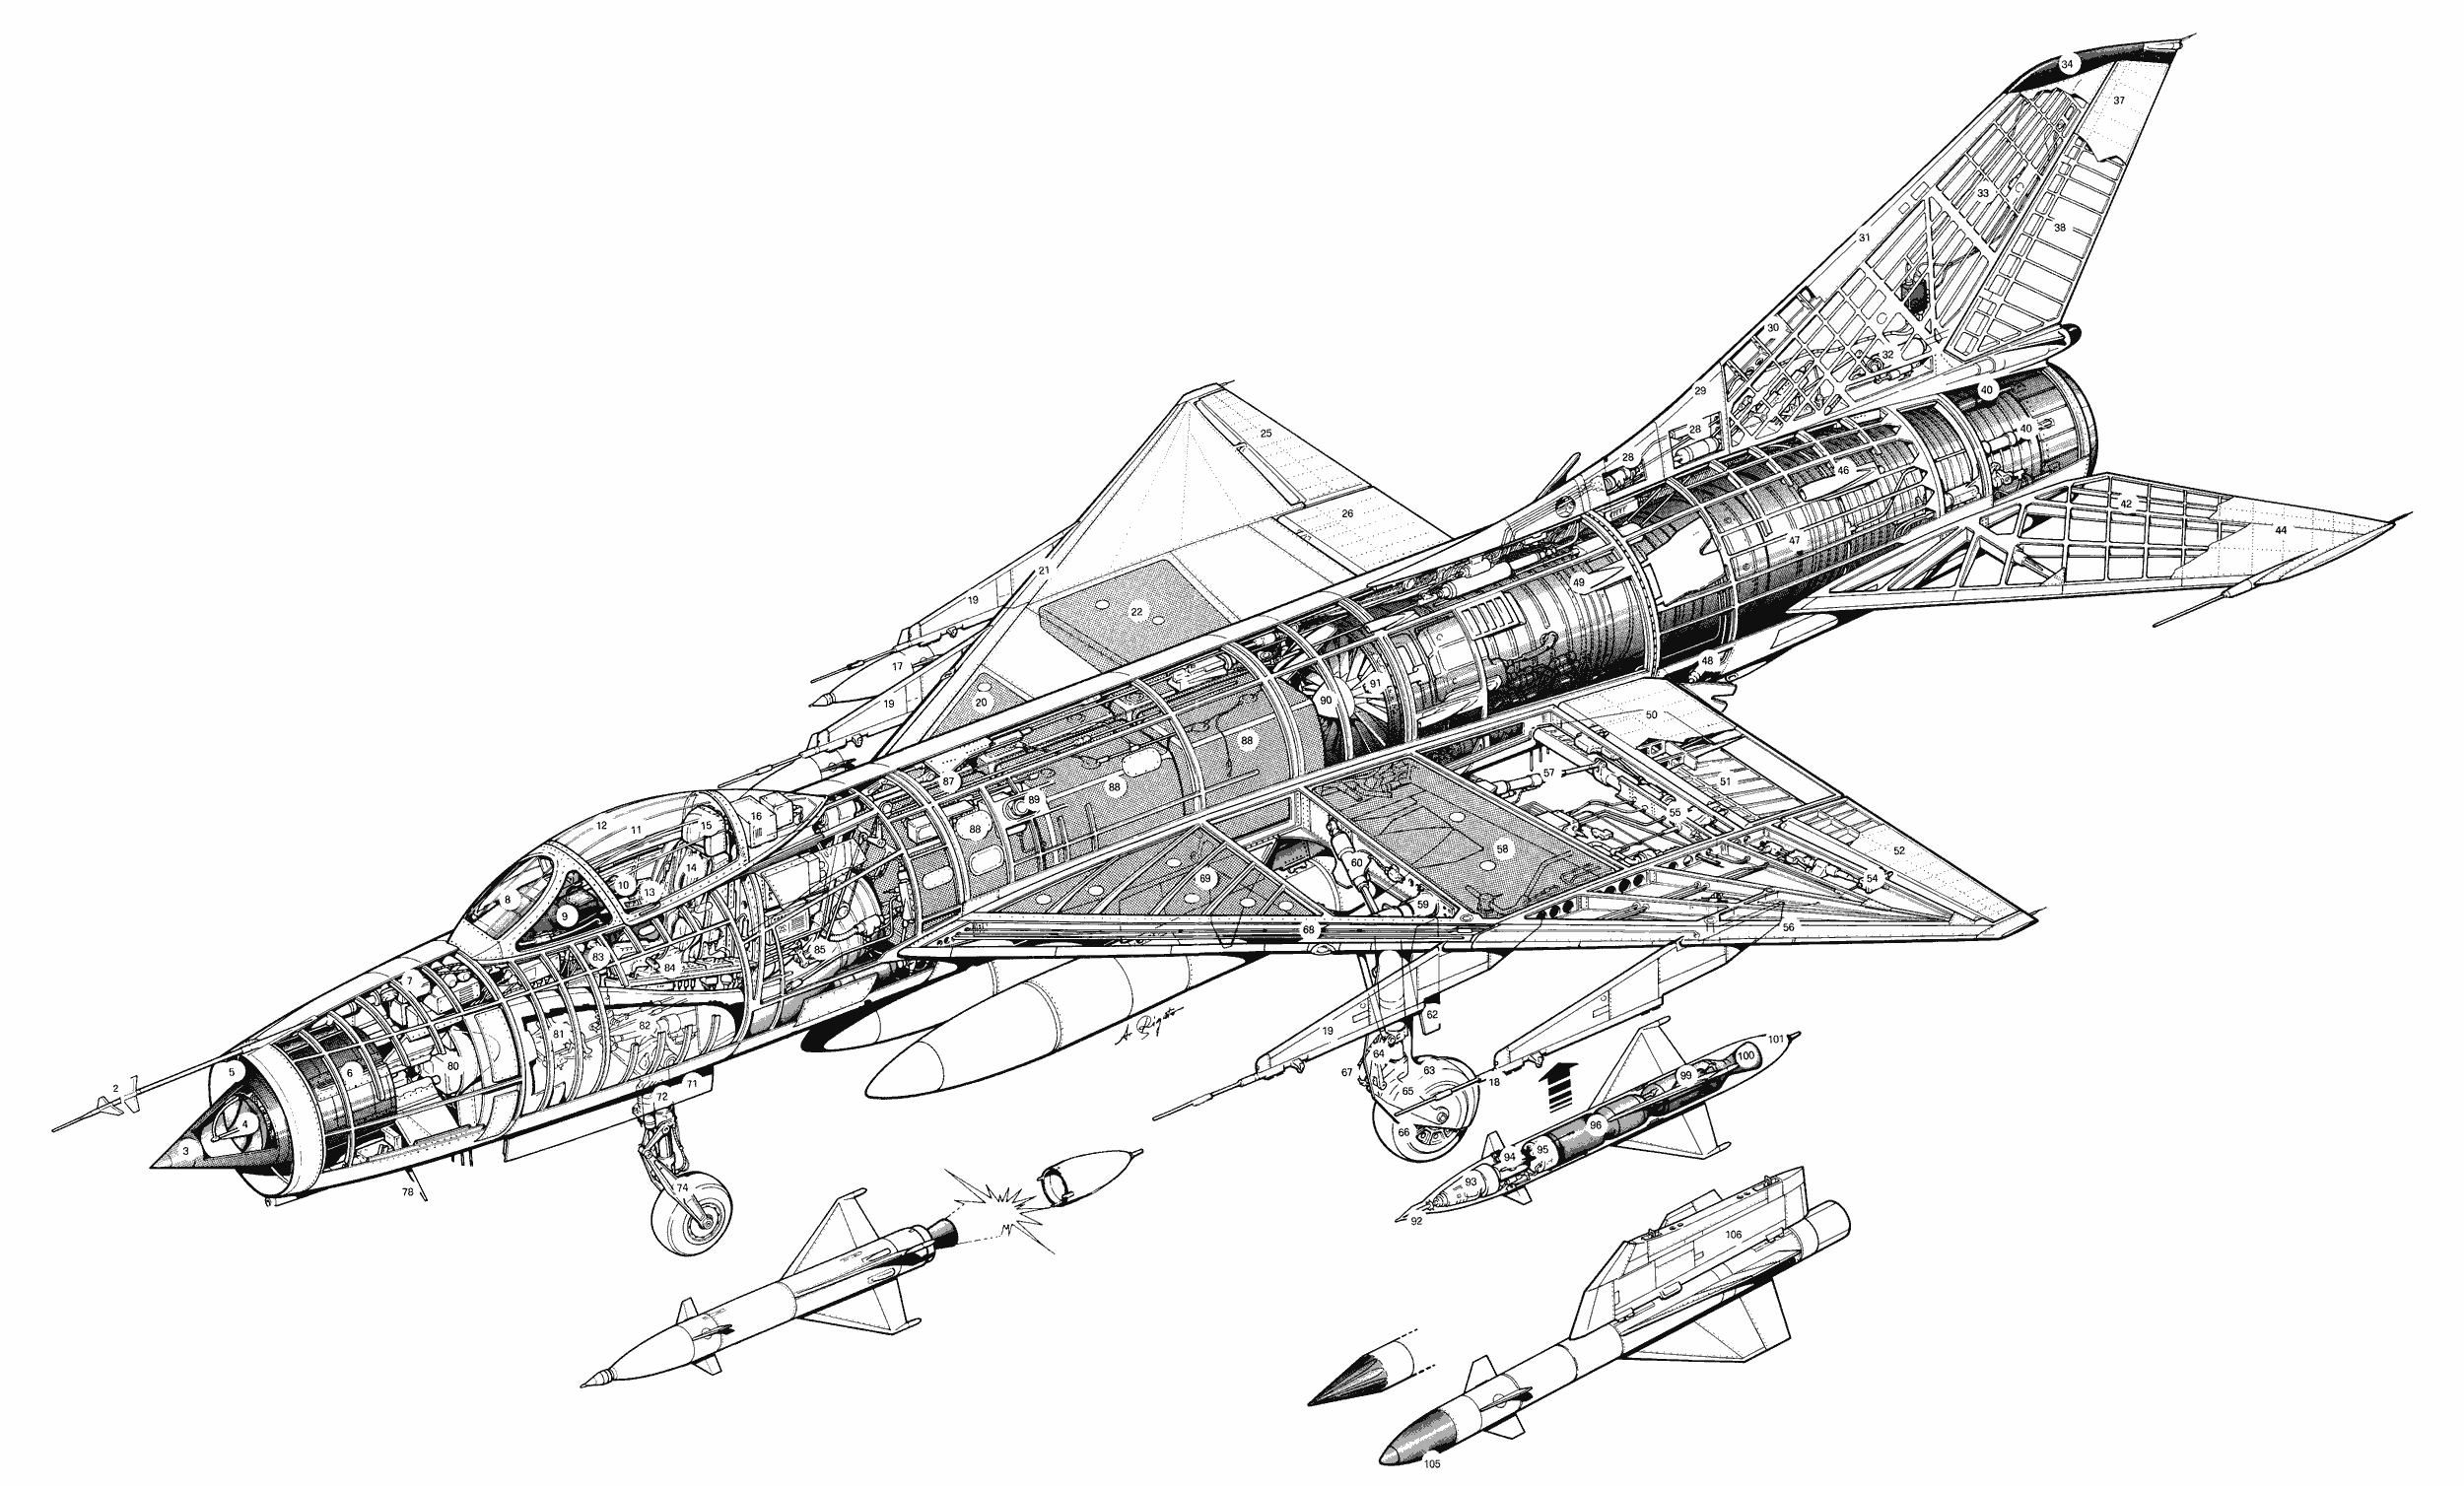 Су-9 - первый советский сверхзвуковой истребитель-перехватчик
су-9 - первый советский сверхзвуковой истребитель-перехватчик